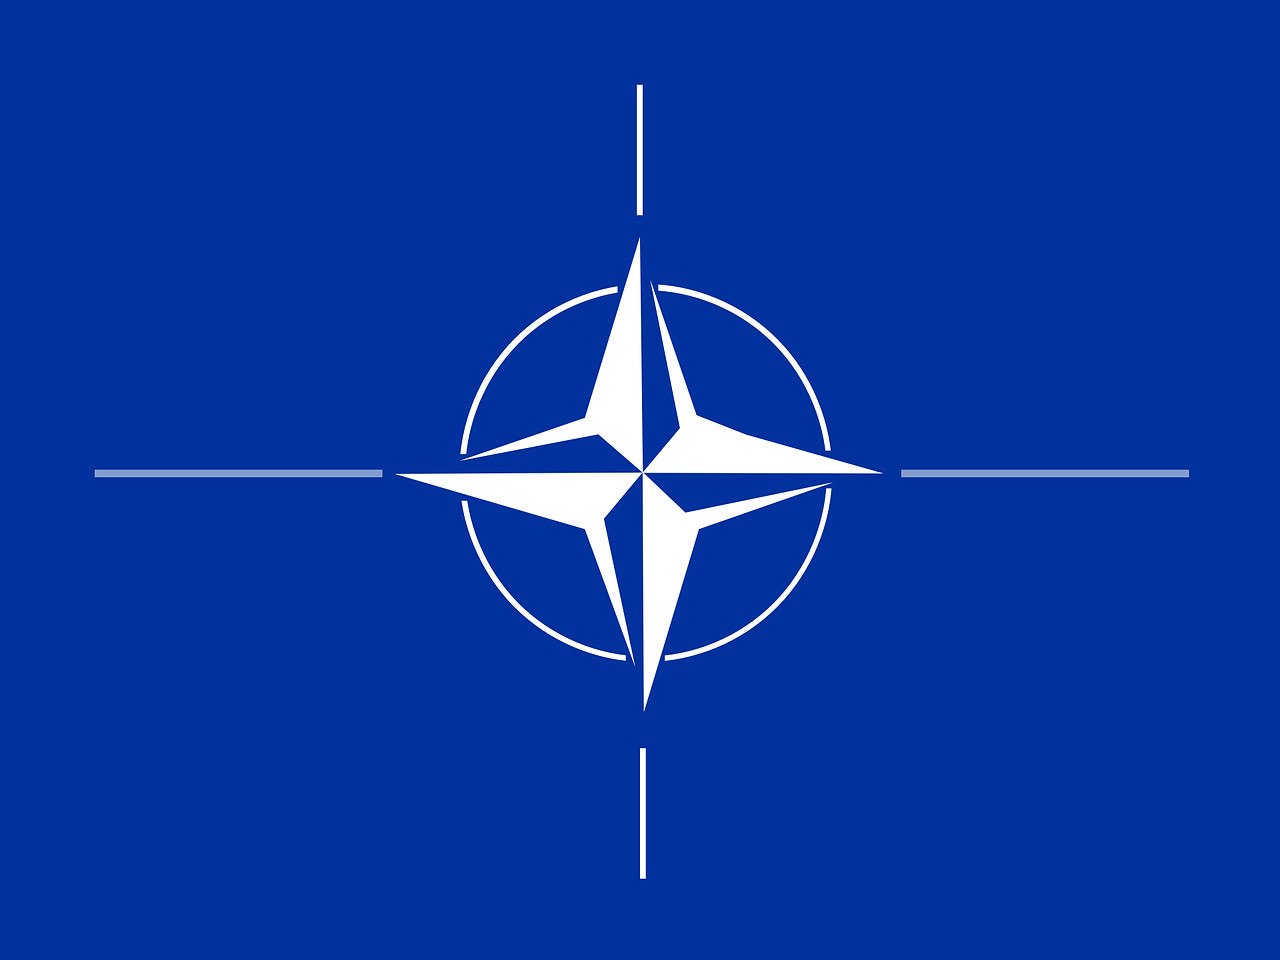 Les nouvelles adhésions à l’OTAN ou le droit de ne pas « s’exposer comme une proie » - La chronique philo d'Alain Anquetil